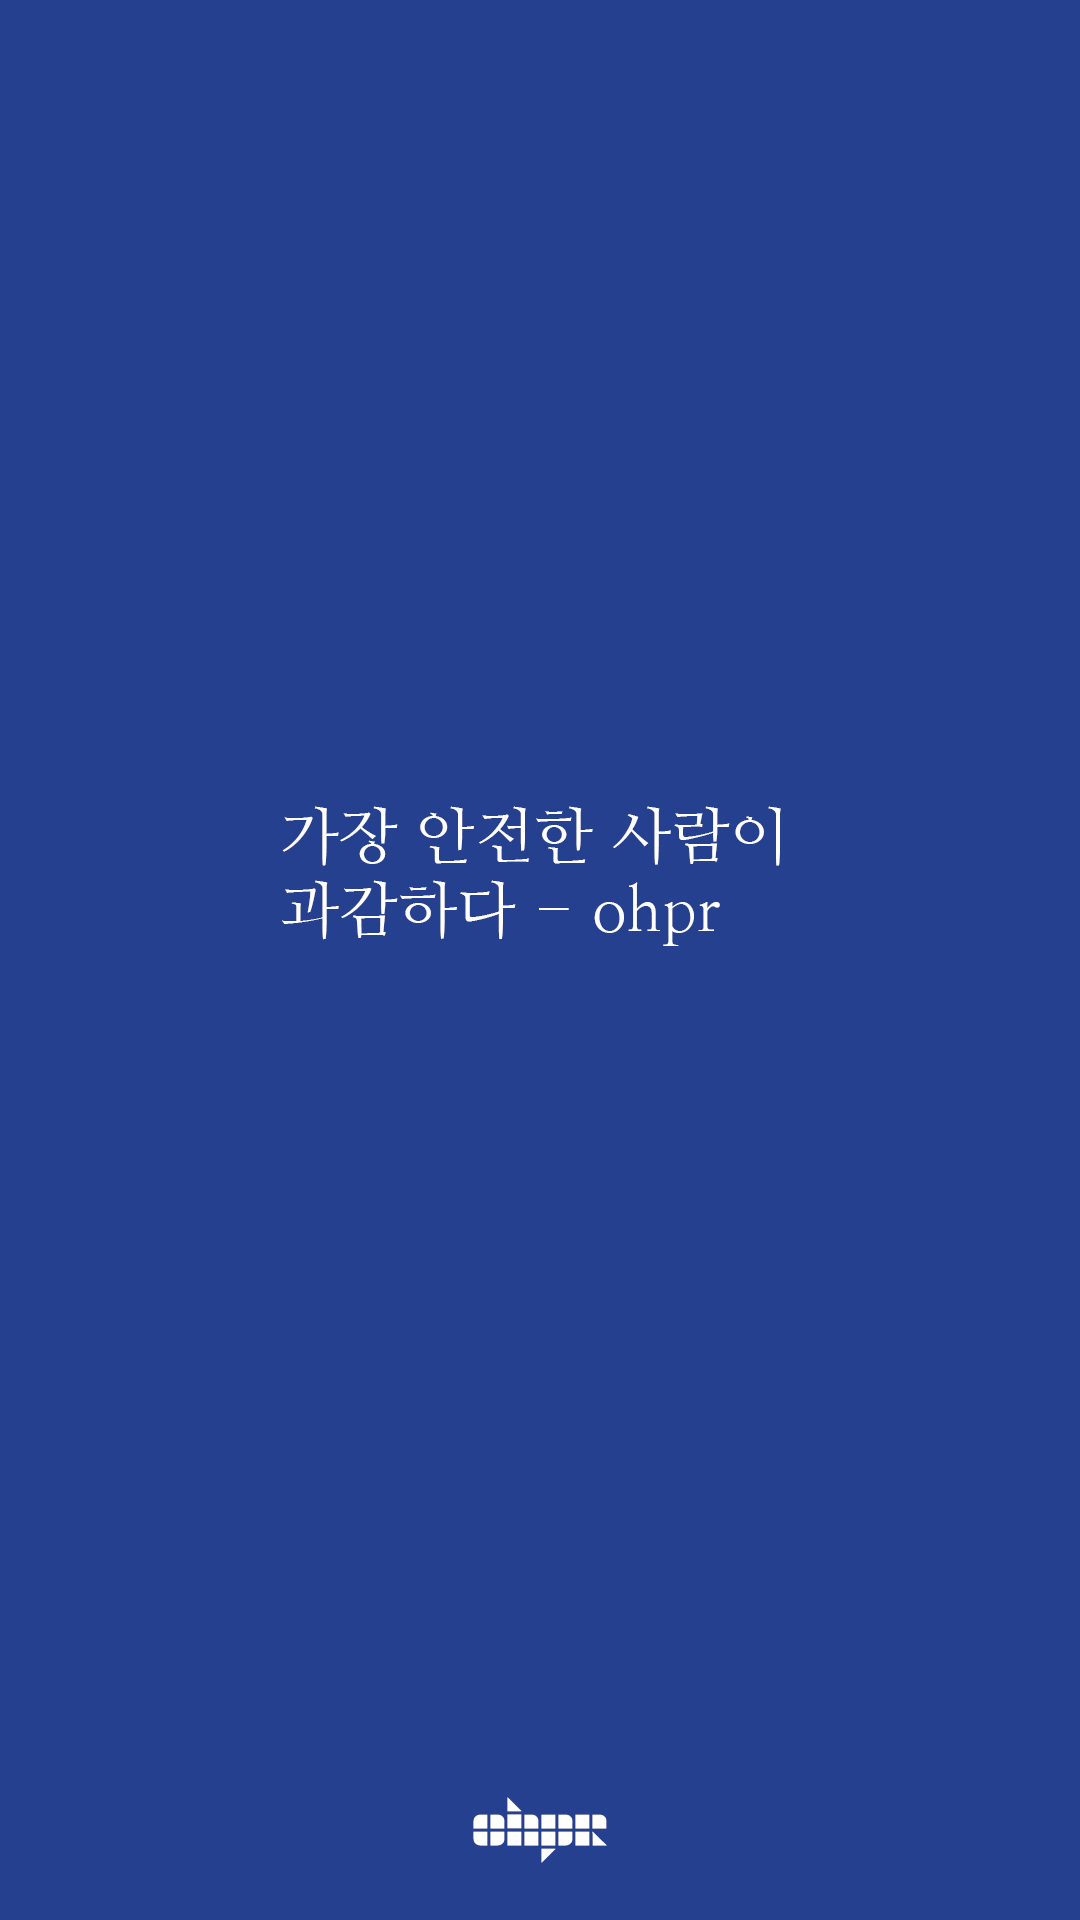 ohpr_wording16